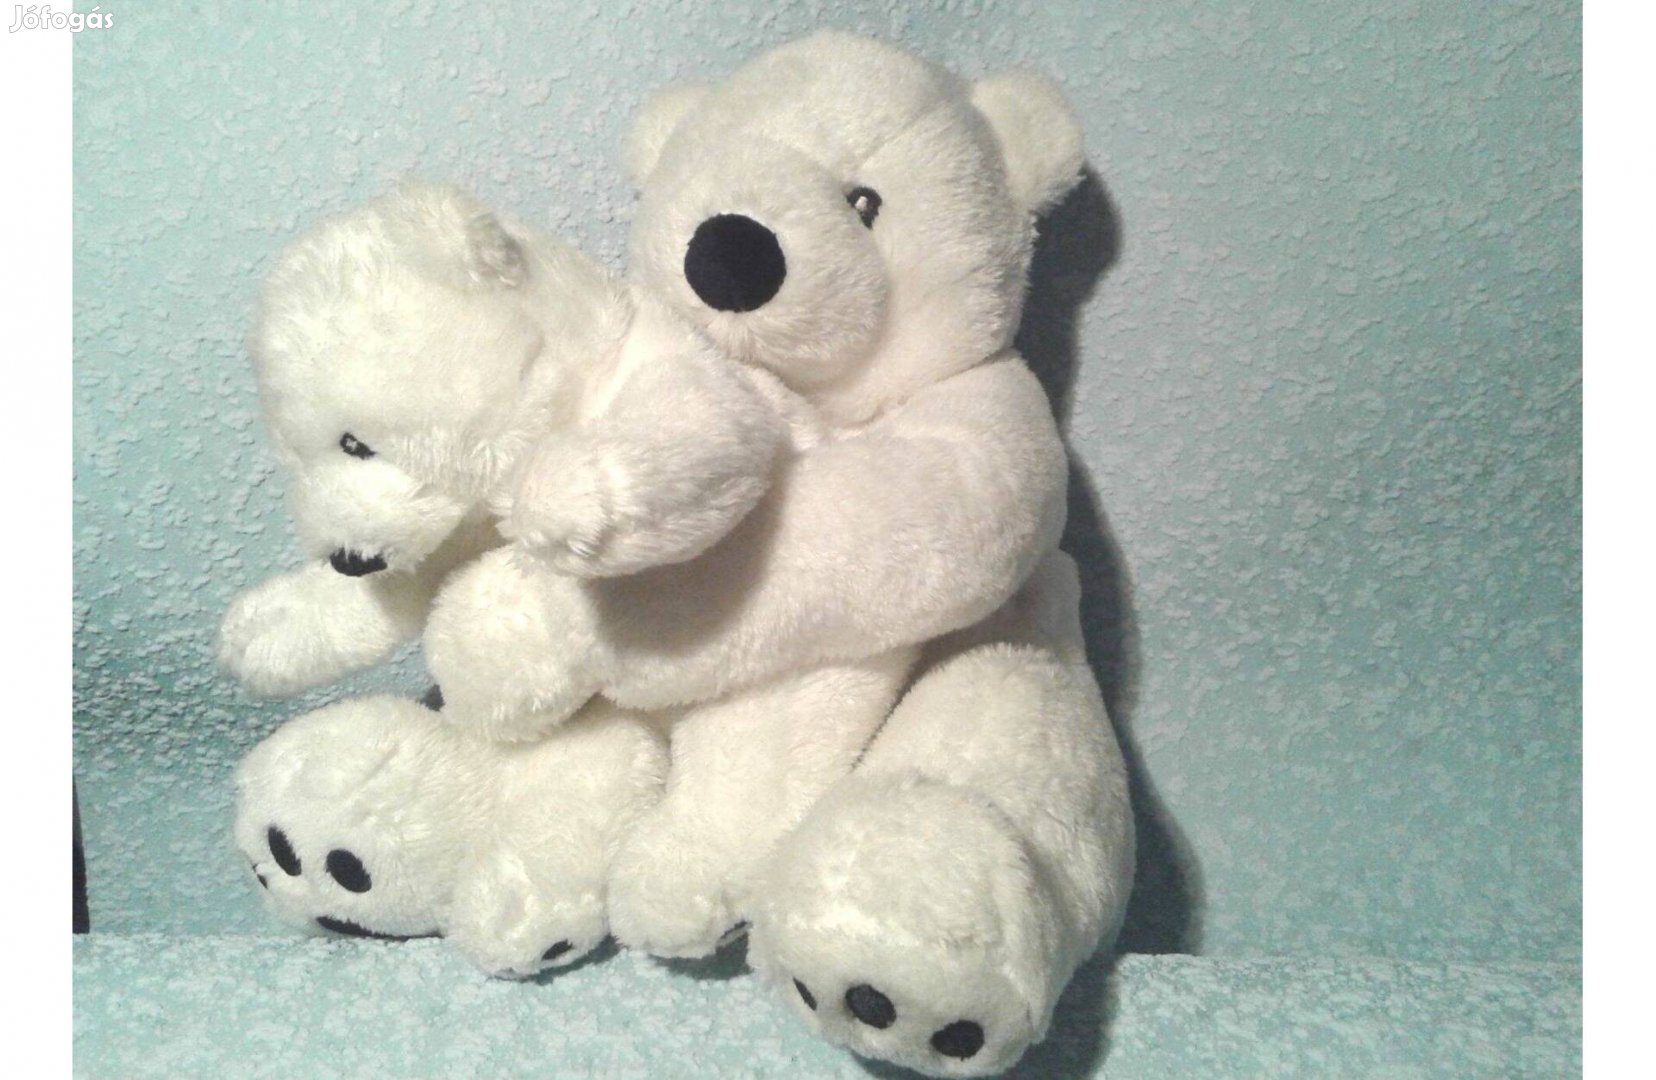 2 jegesmedve fehér maci kicsinyével közepes méret